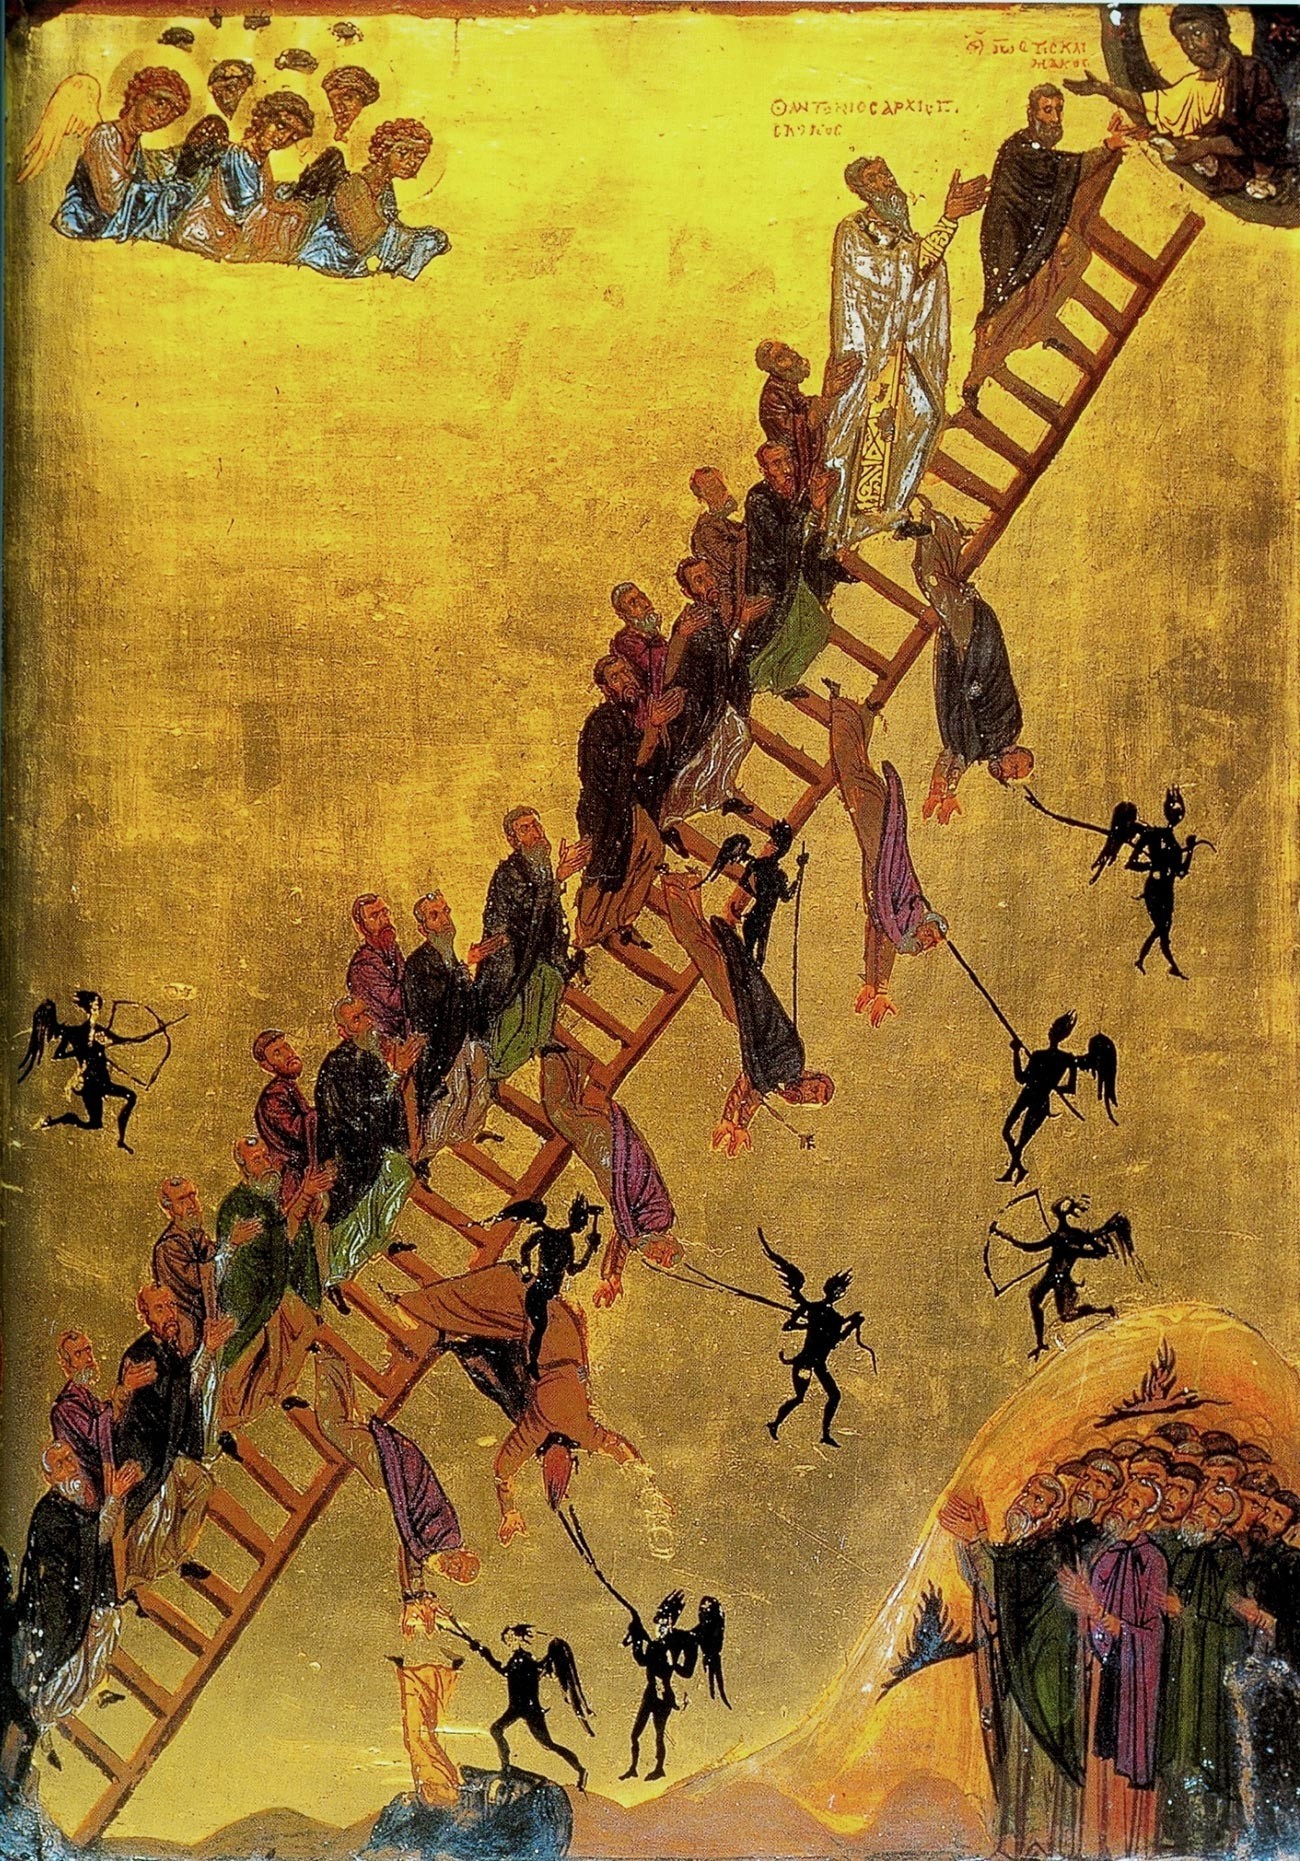 Ikona Lestve božanskega vzpona iz 12. stoletja (samostan svete Katarine na Sinajskem polotoku, Egipt) prikazuje menihe na čelu z Janezom Klimakom, ki se dvigajo po lestvi do Jezusa, ki je zgoraj desno.
